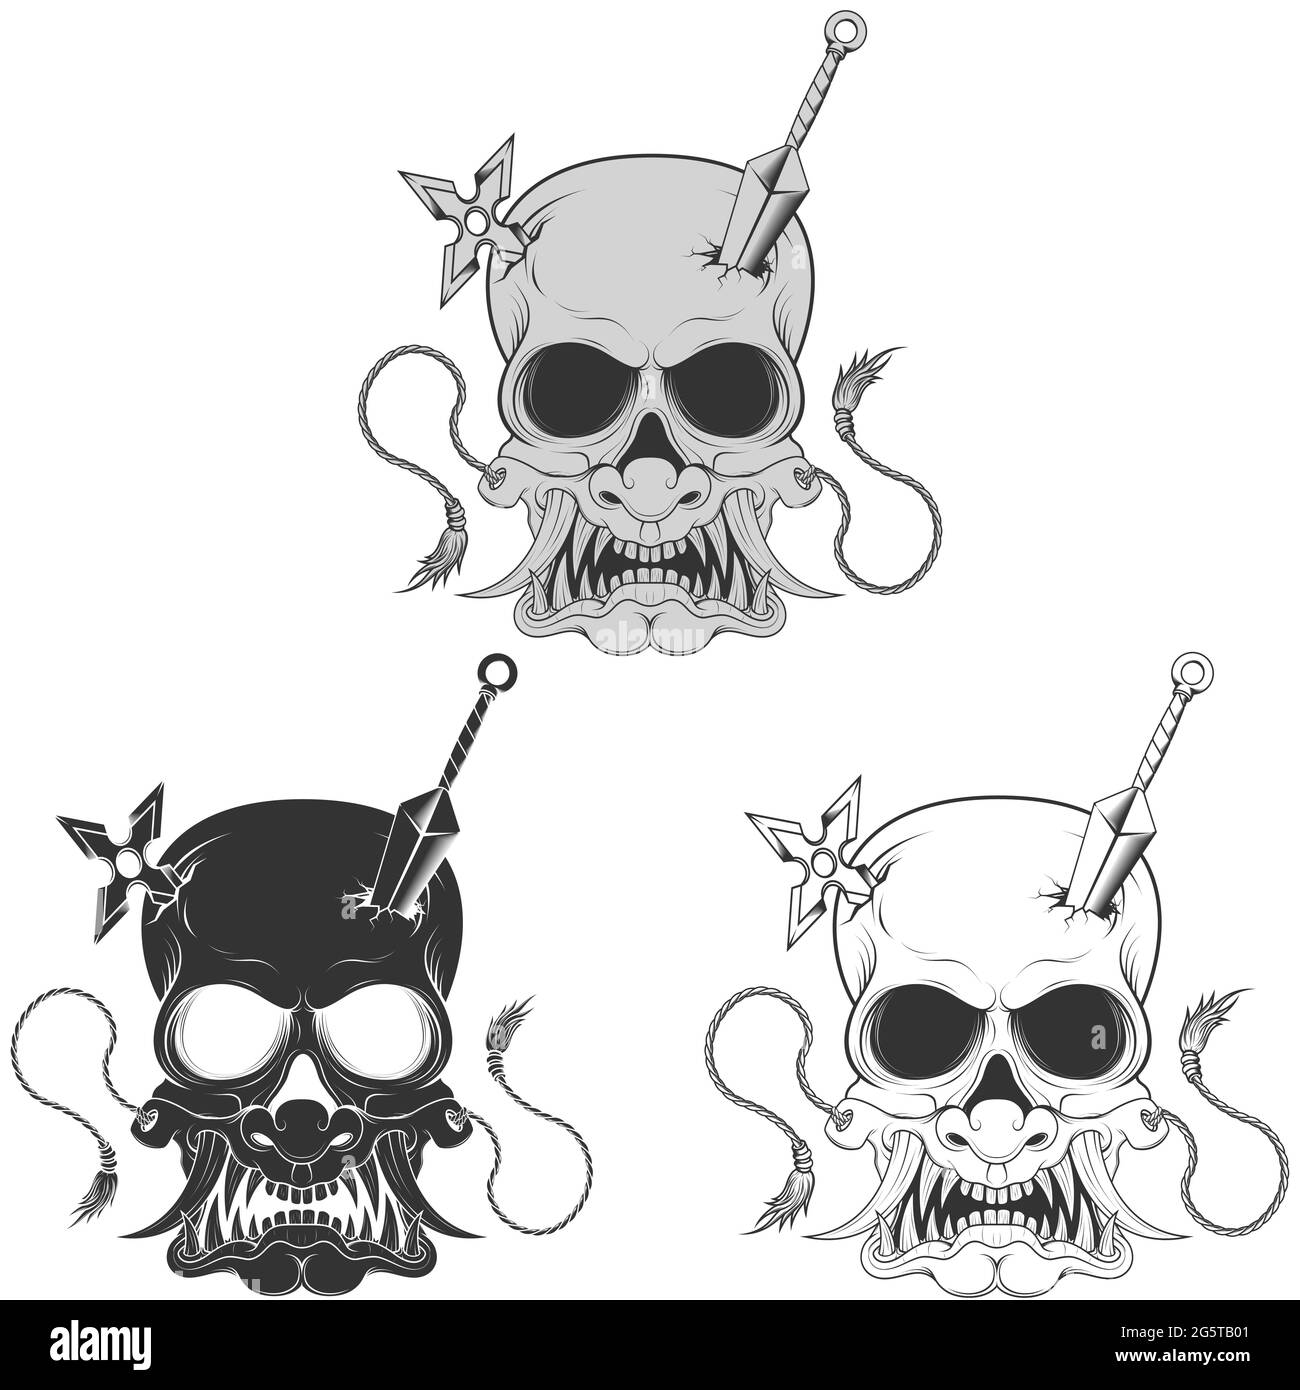 Disegno vettoriale del cranio ninja con maschera giapponese hannya, kunai e  shuriken, scala di grigi, bianco e nero Immagine e Vettoriale - Alamy